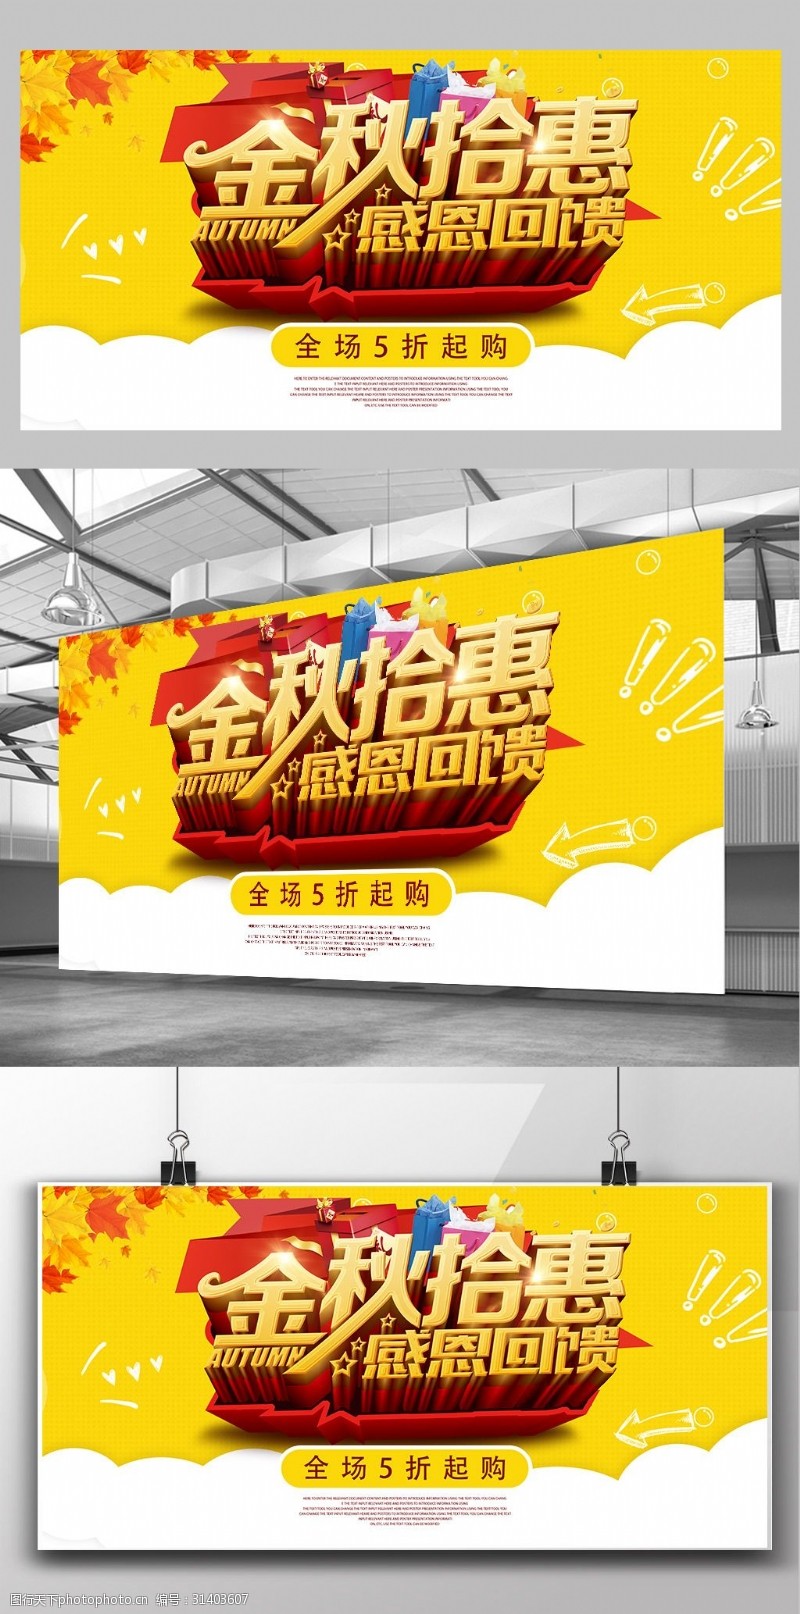 新品上市宣传金秋拾惠秋季促销活动宣传海报模板